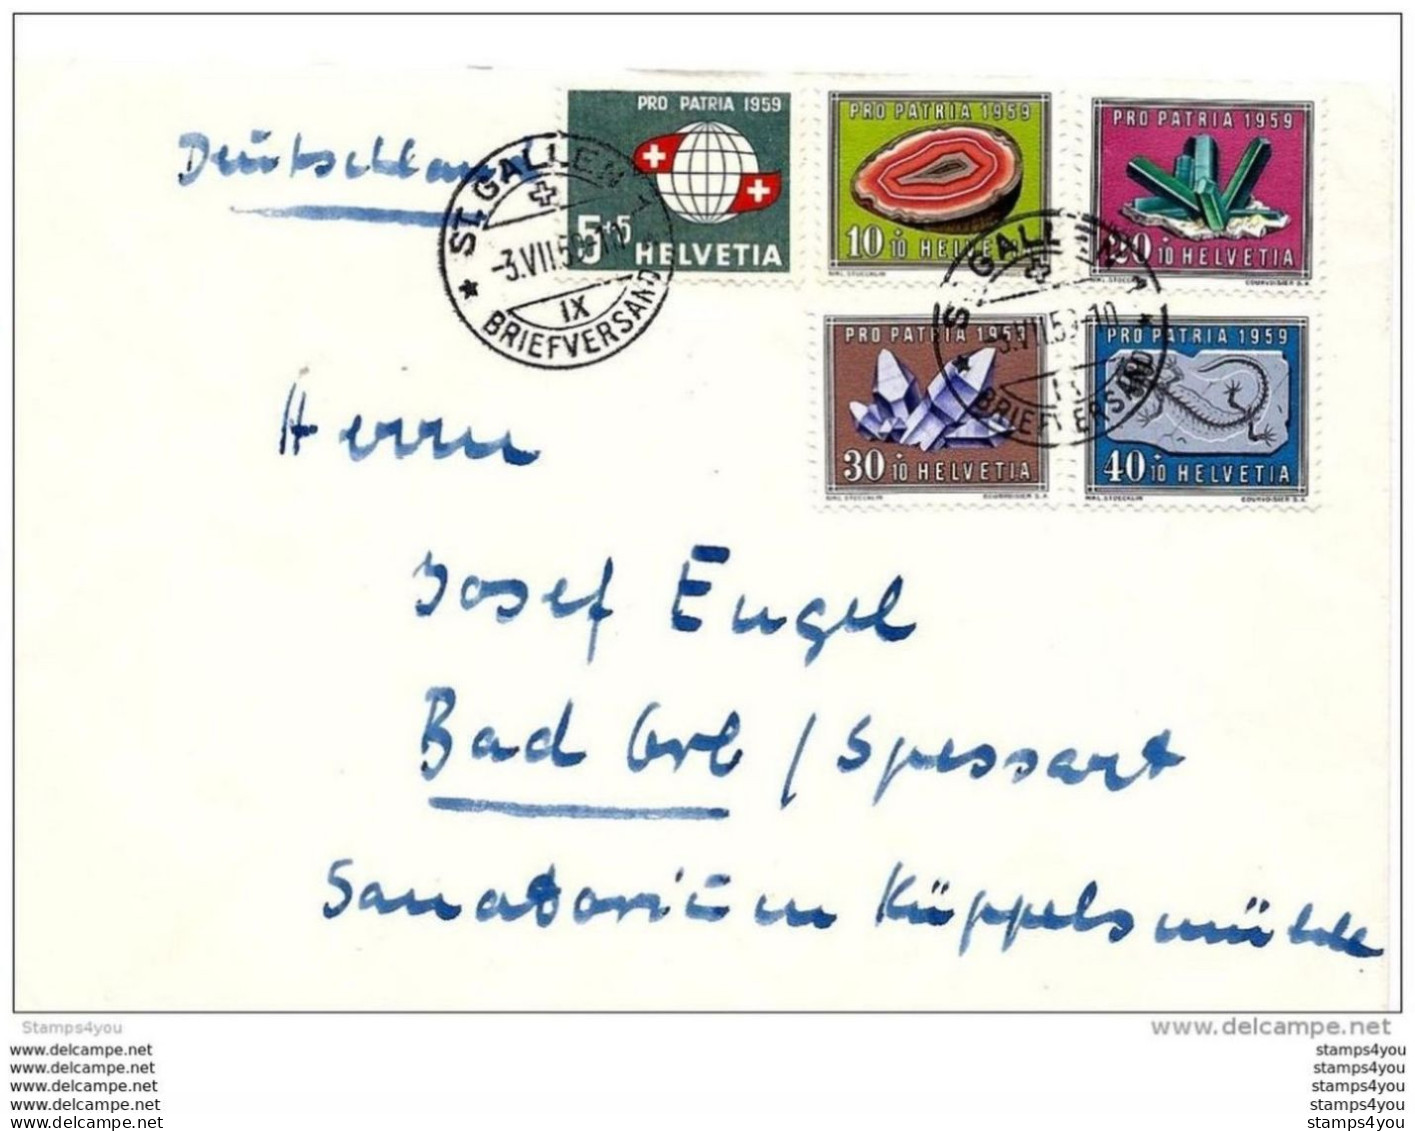 100 - 71 - Enveloppe Envoyée De St Gallern En Allemagne - 1959 Avec Série Pro Patria - Storia Postale